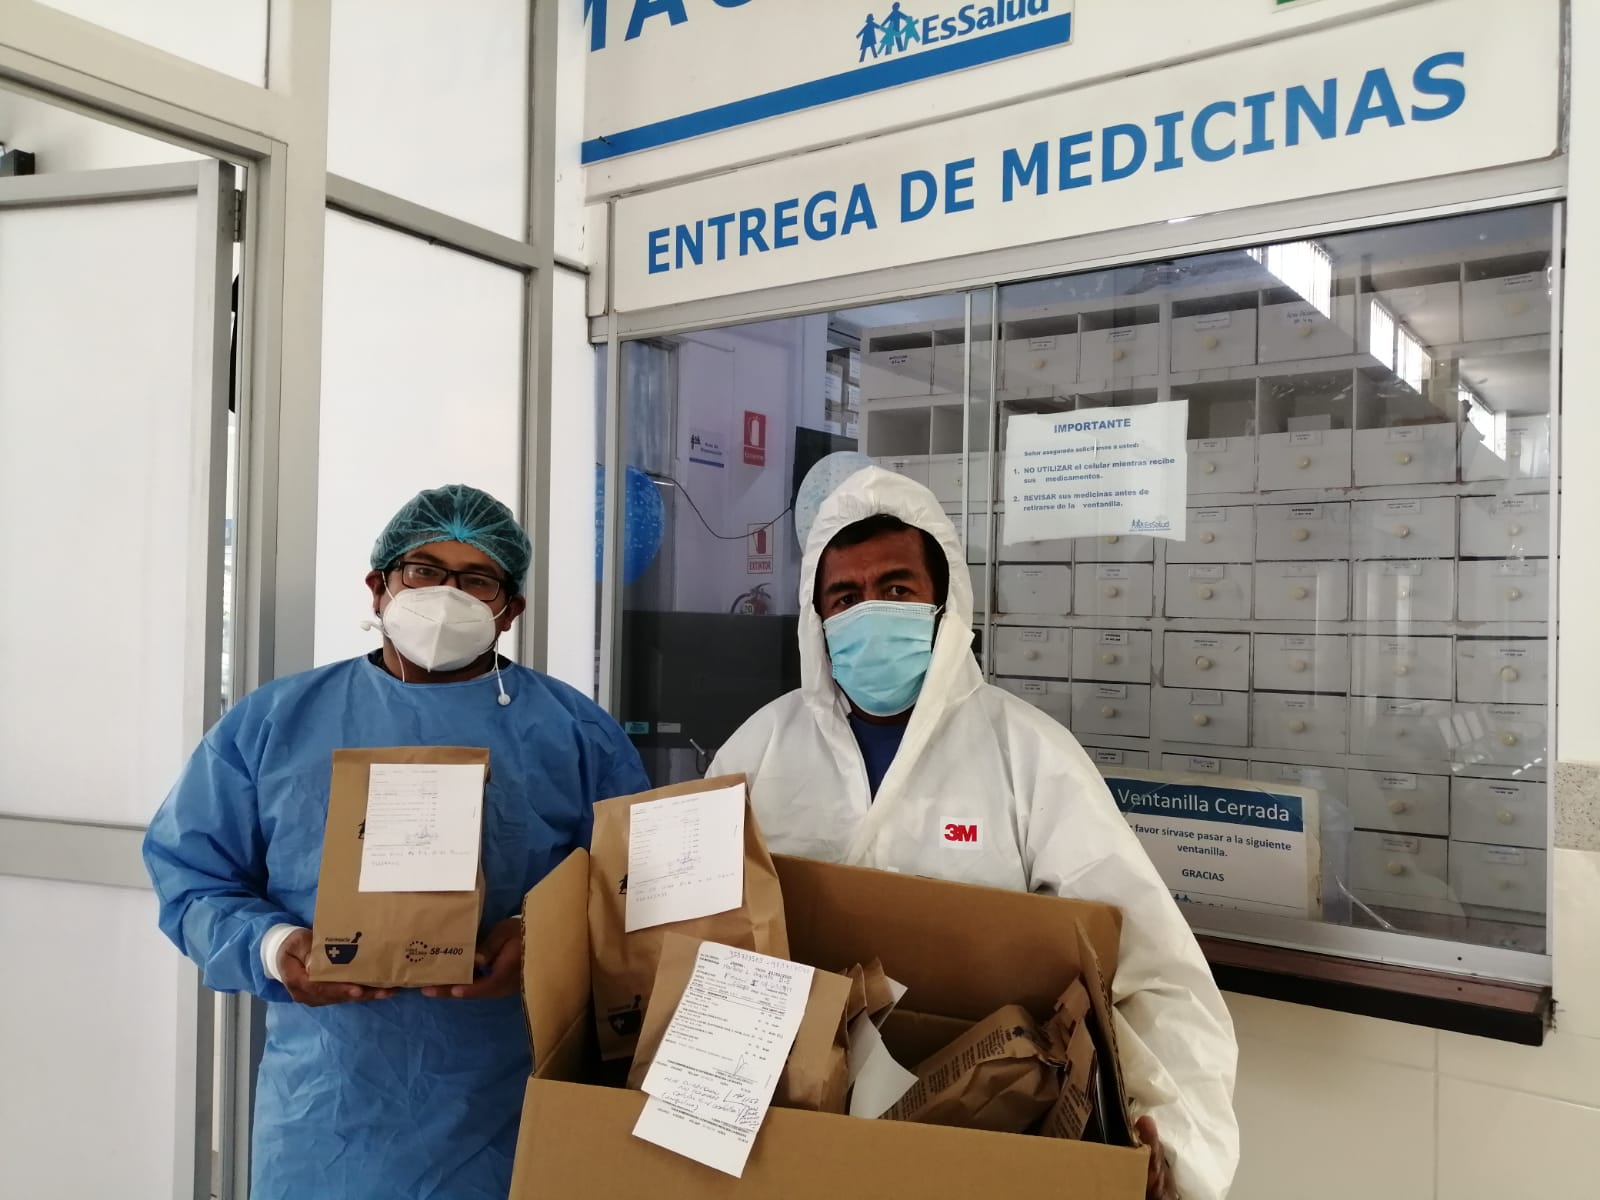 Essalud - En EsSalud Moquegua, farmacia delivery entregó más de 9 mil recetas durante período de pandemia